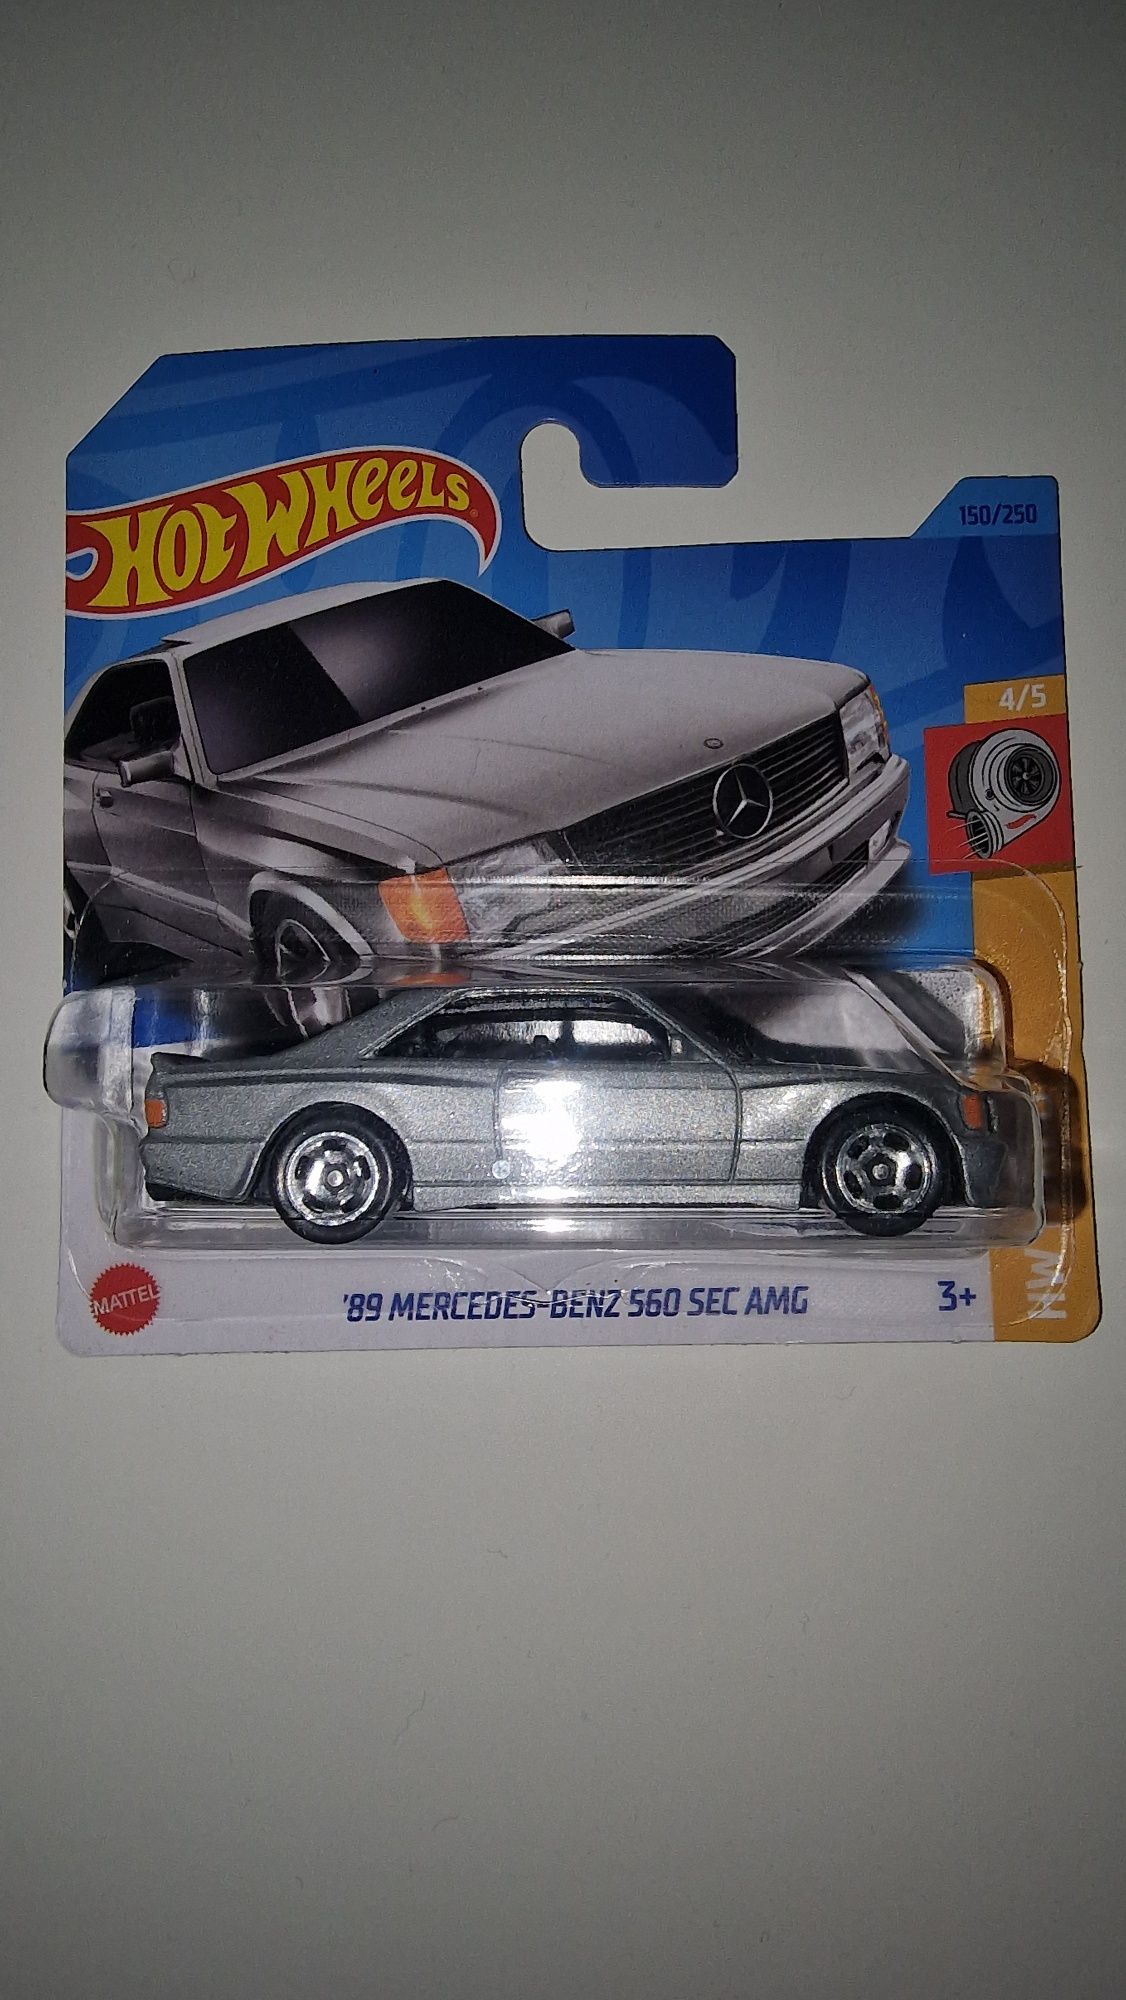 Mercedes benz 560 sec amg hot wheels